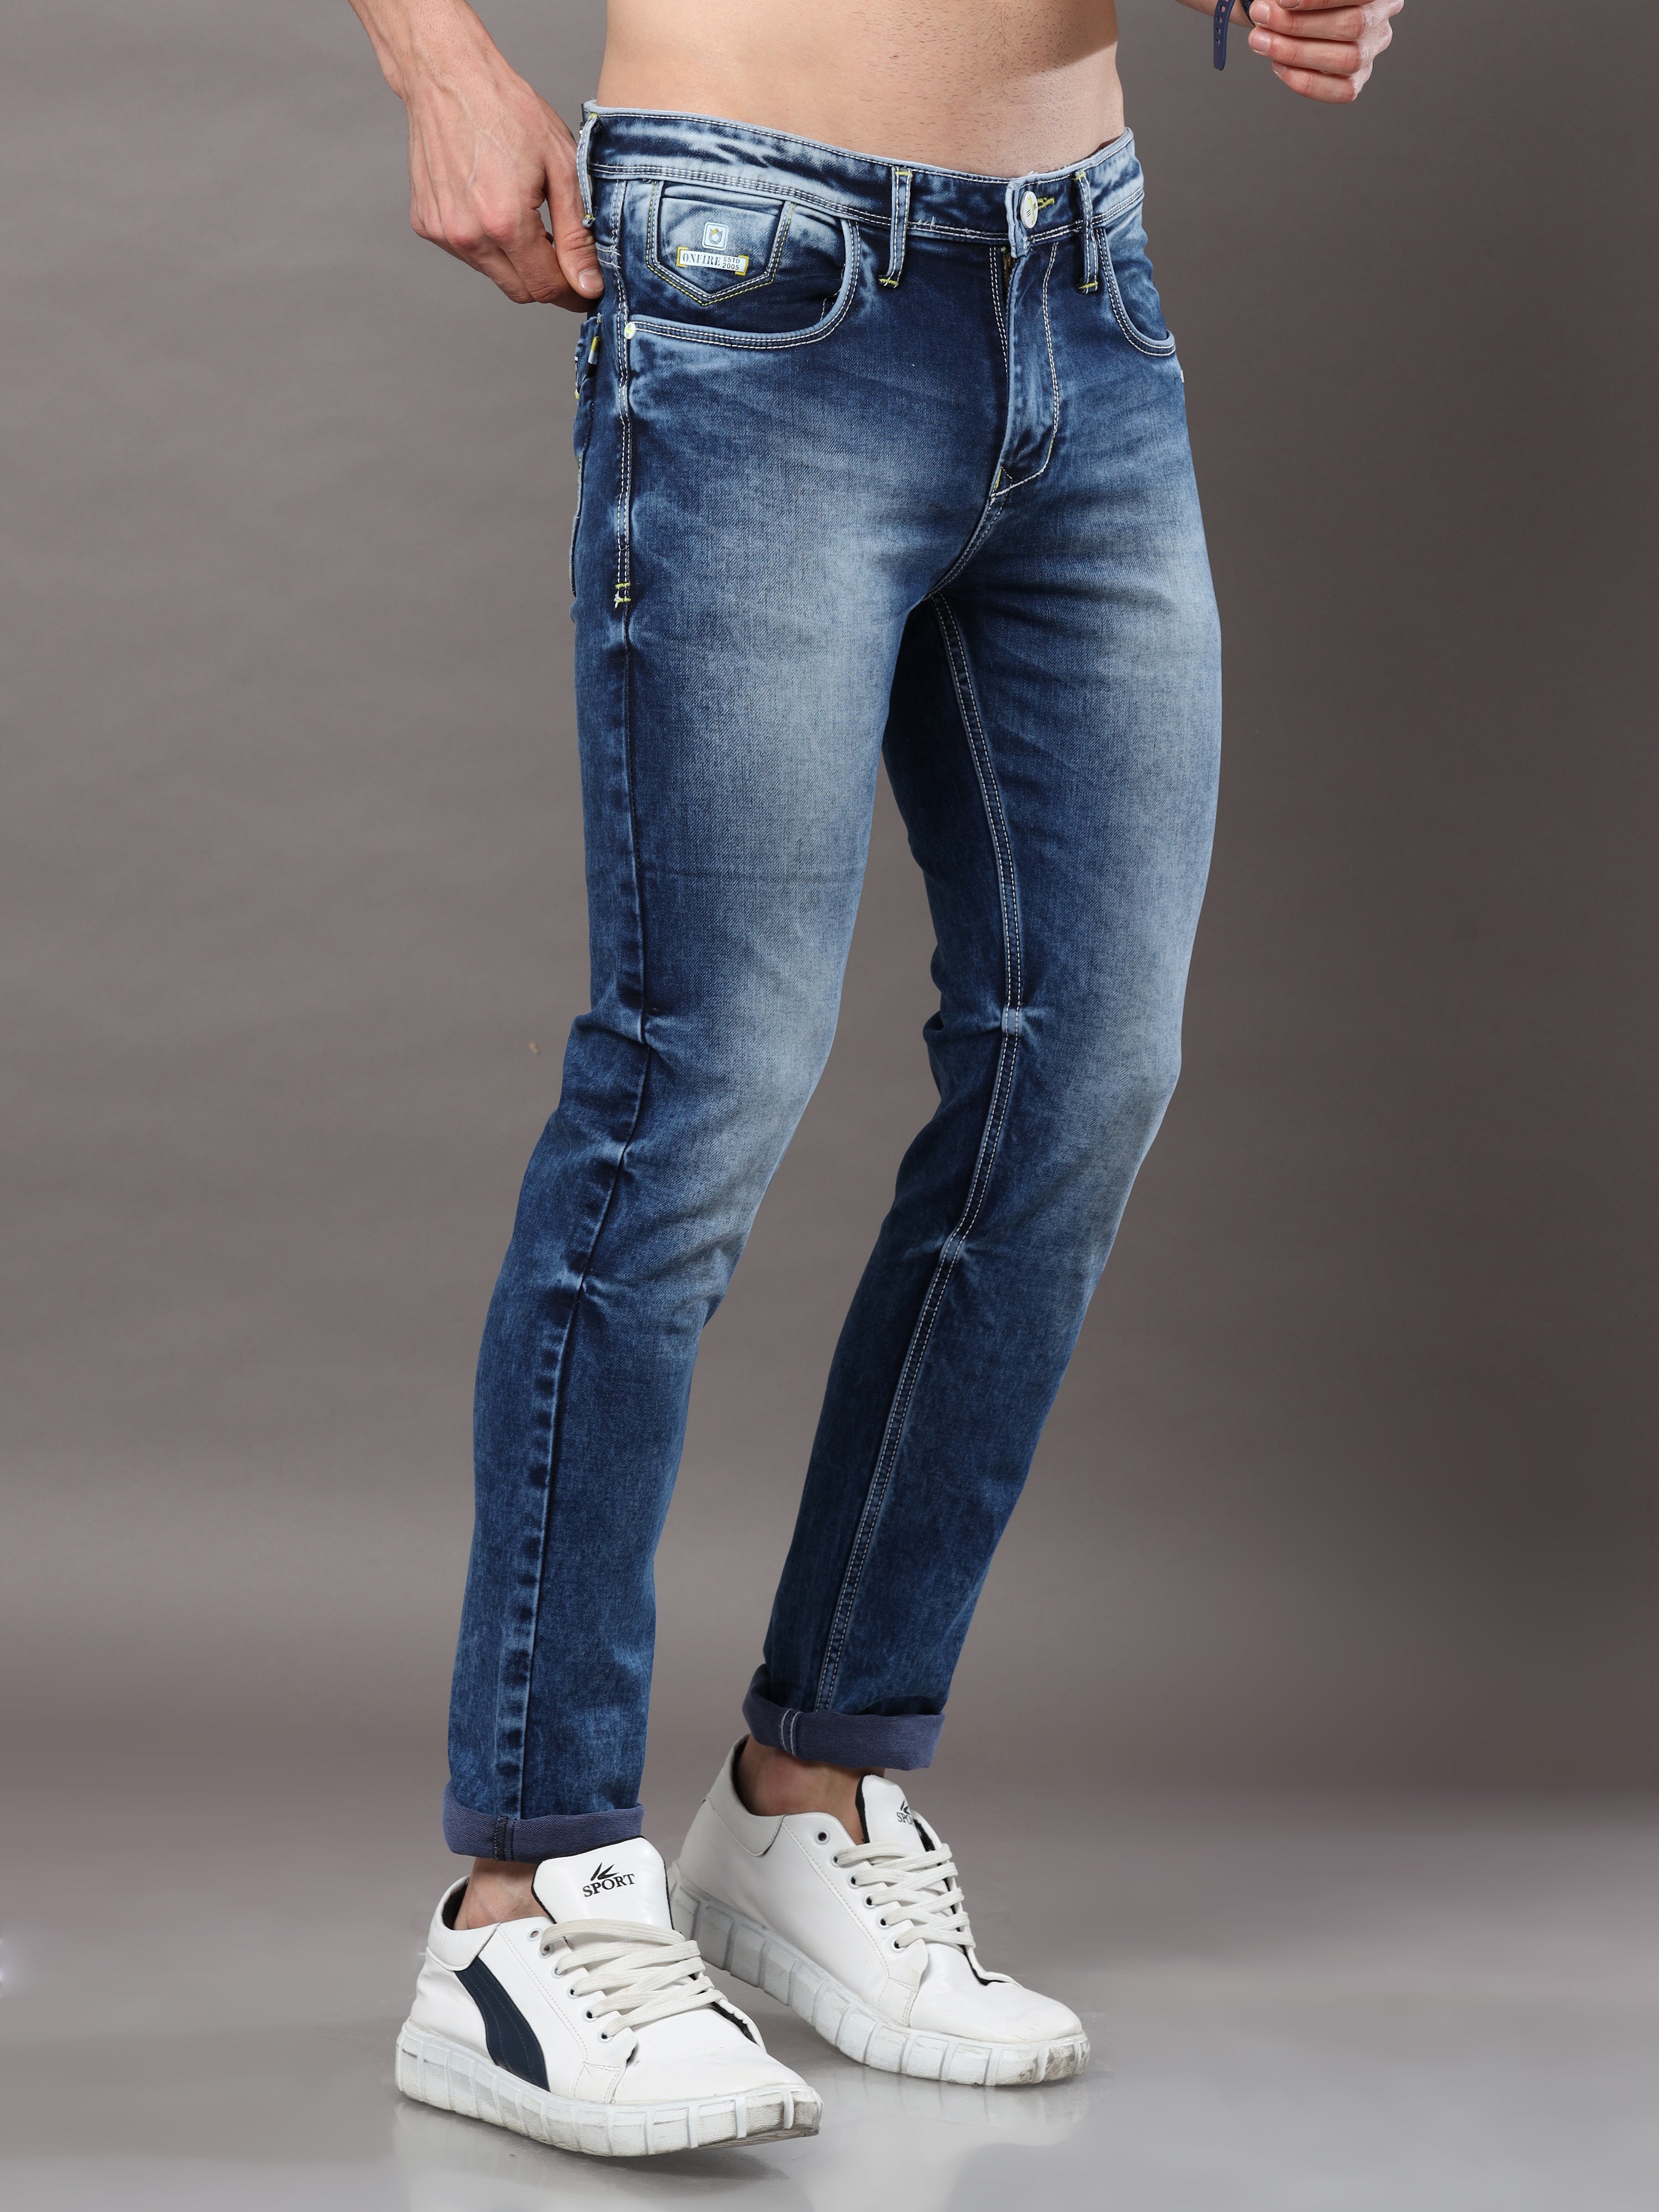 Buy KULTPRIT Light Wash Denim Skinny Fit Men's Jeans | Shoppers Stop